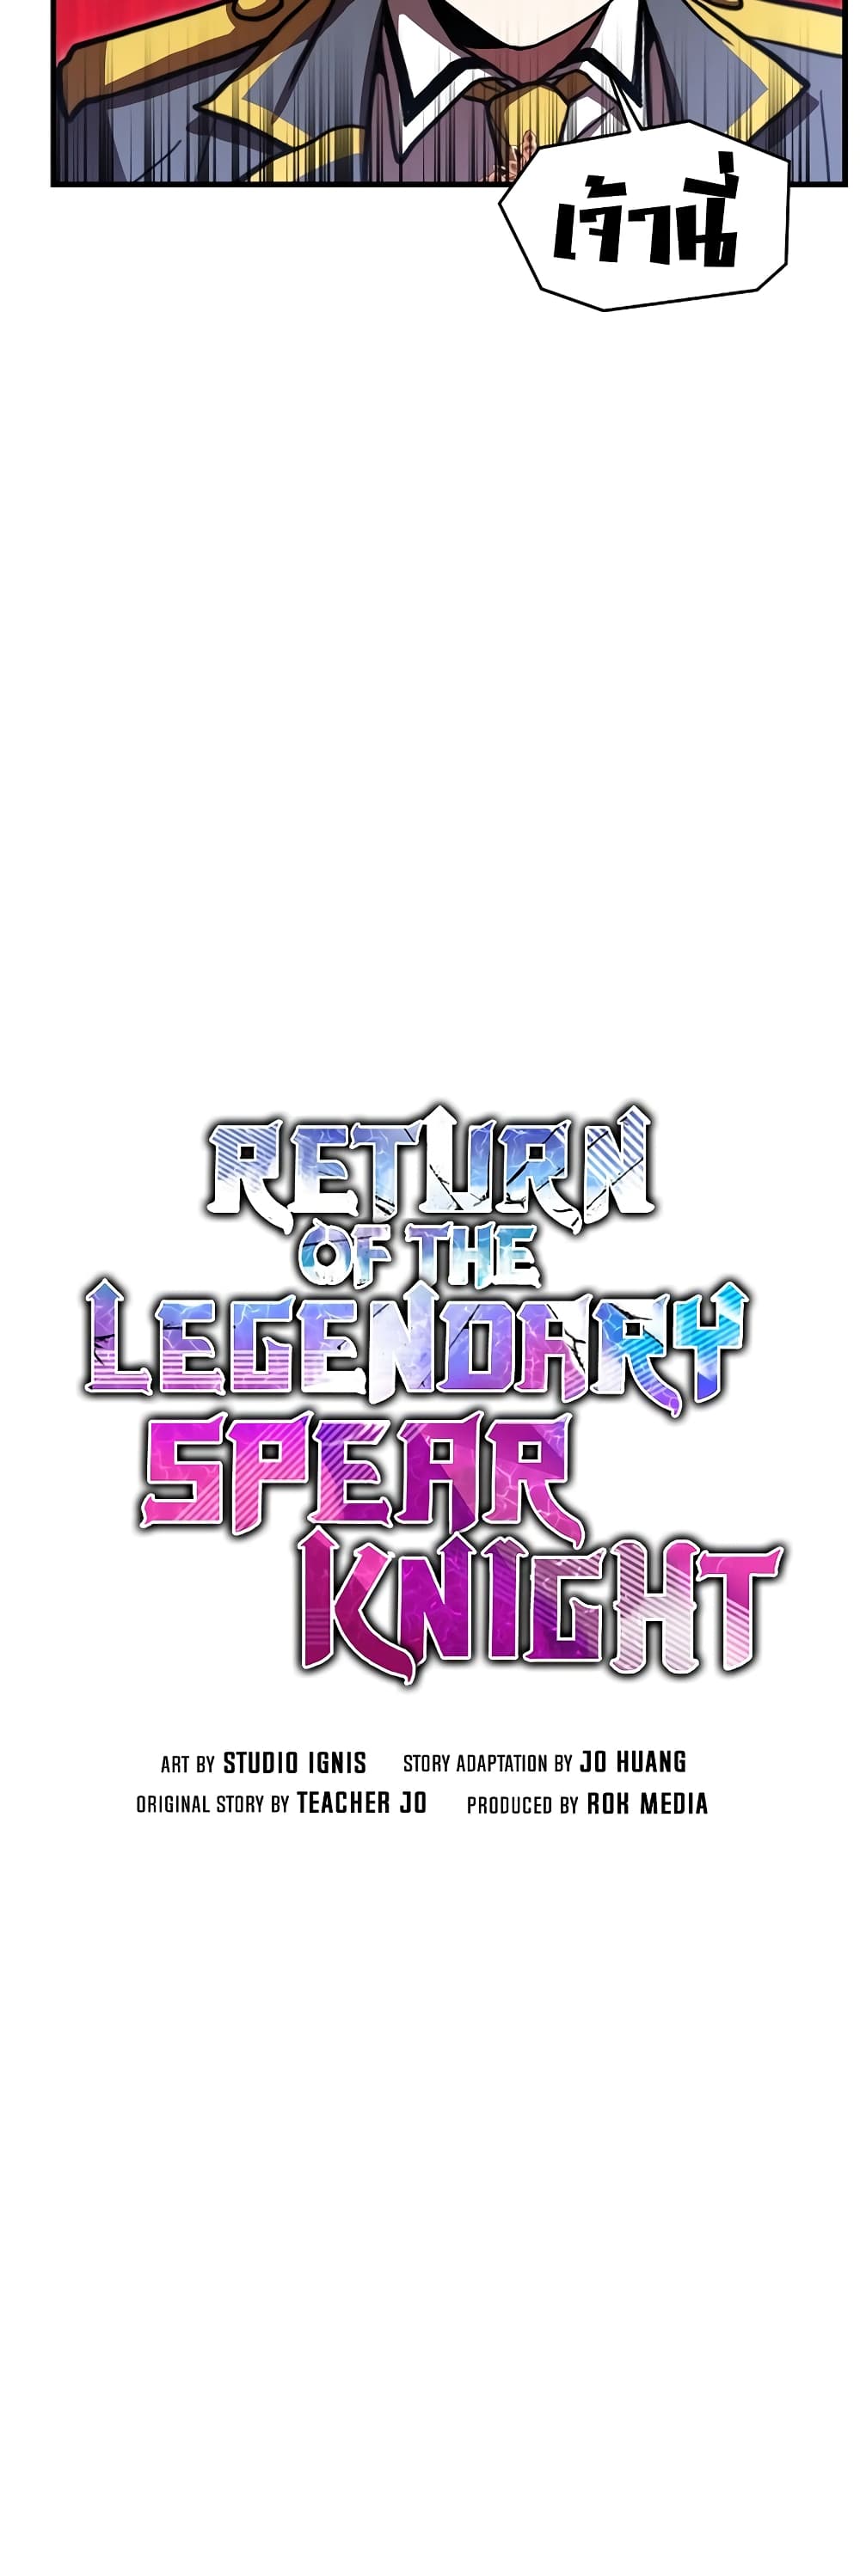 Return of the Legendary Spear Knight 34-34